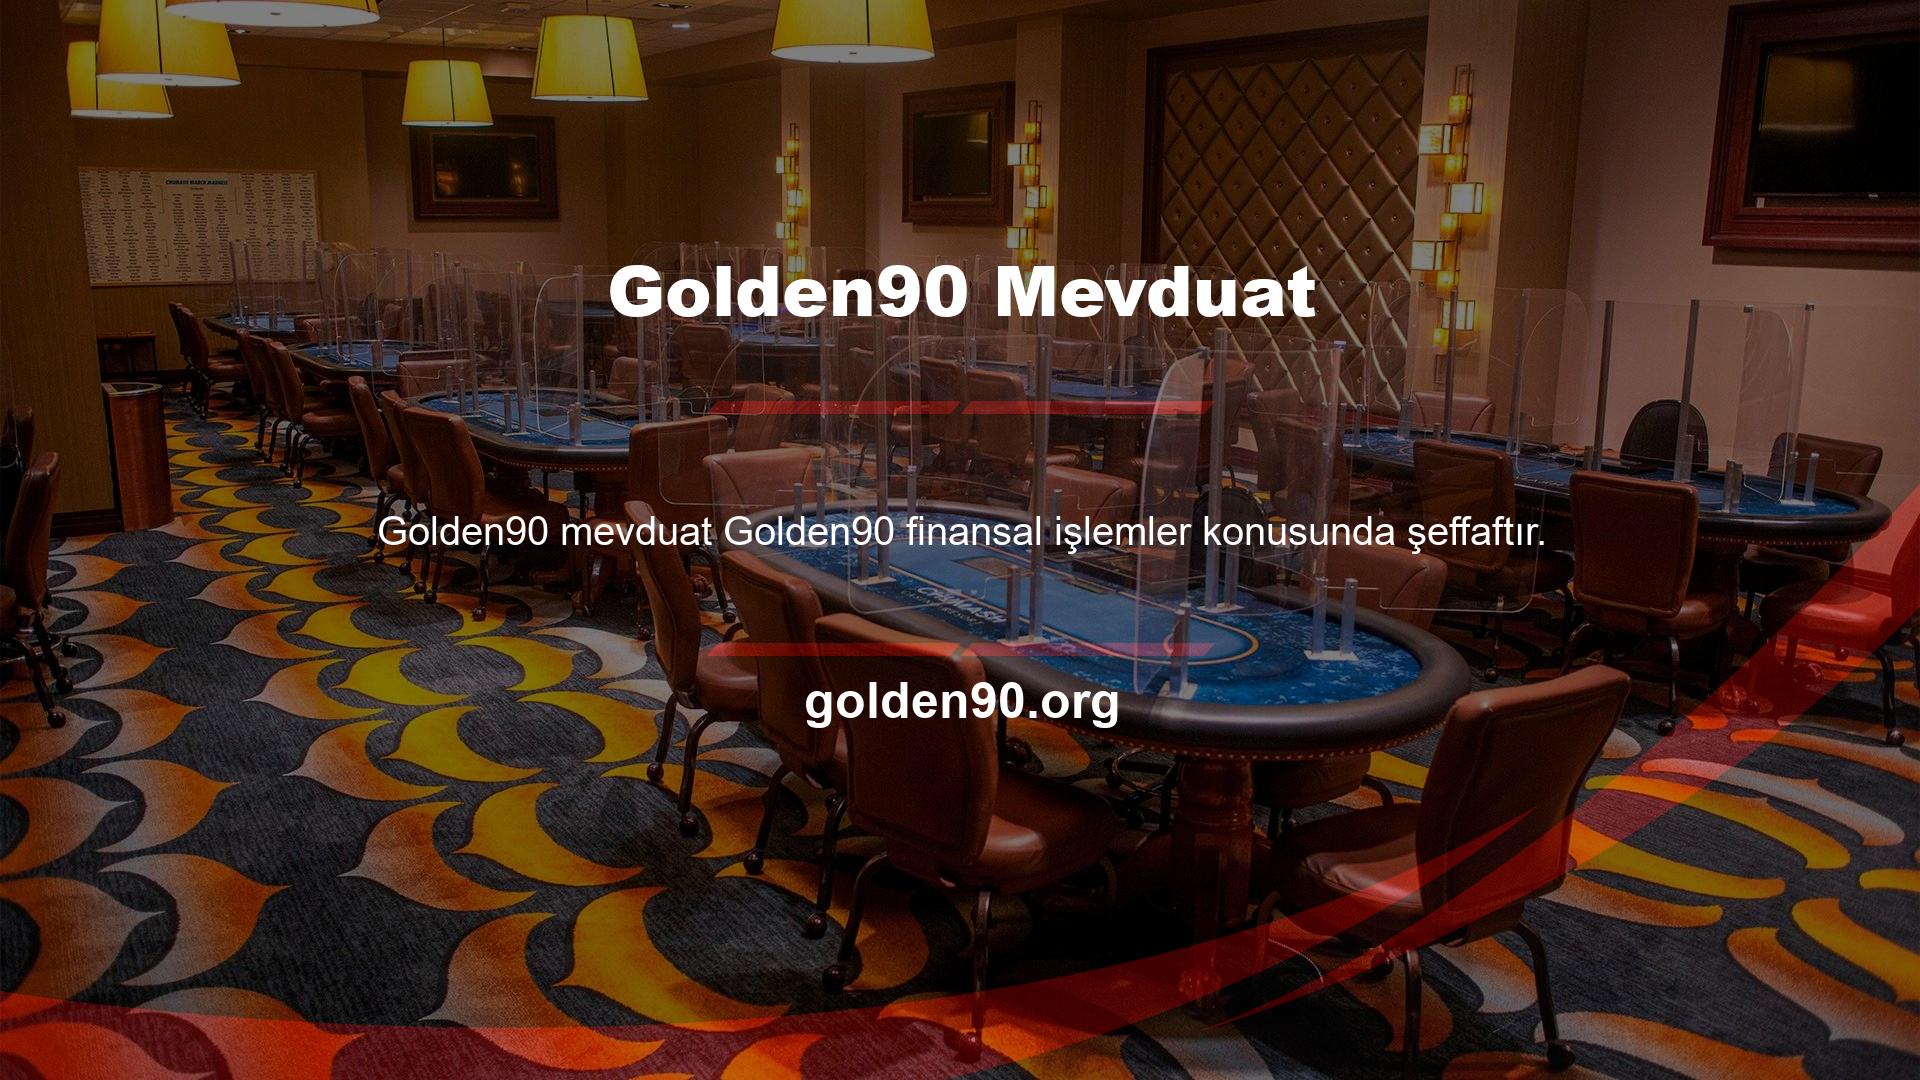 Golden90 tüm güvenlik önlemlerini ve önlemlerini üst düzeyde sağlamaktadır